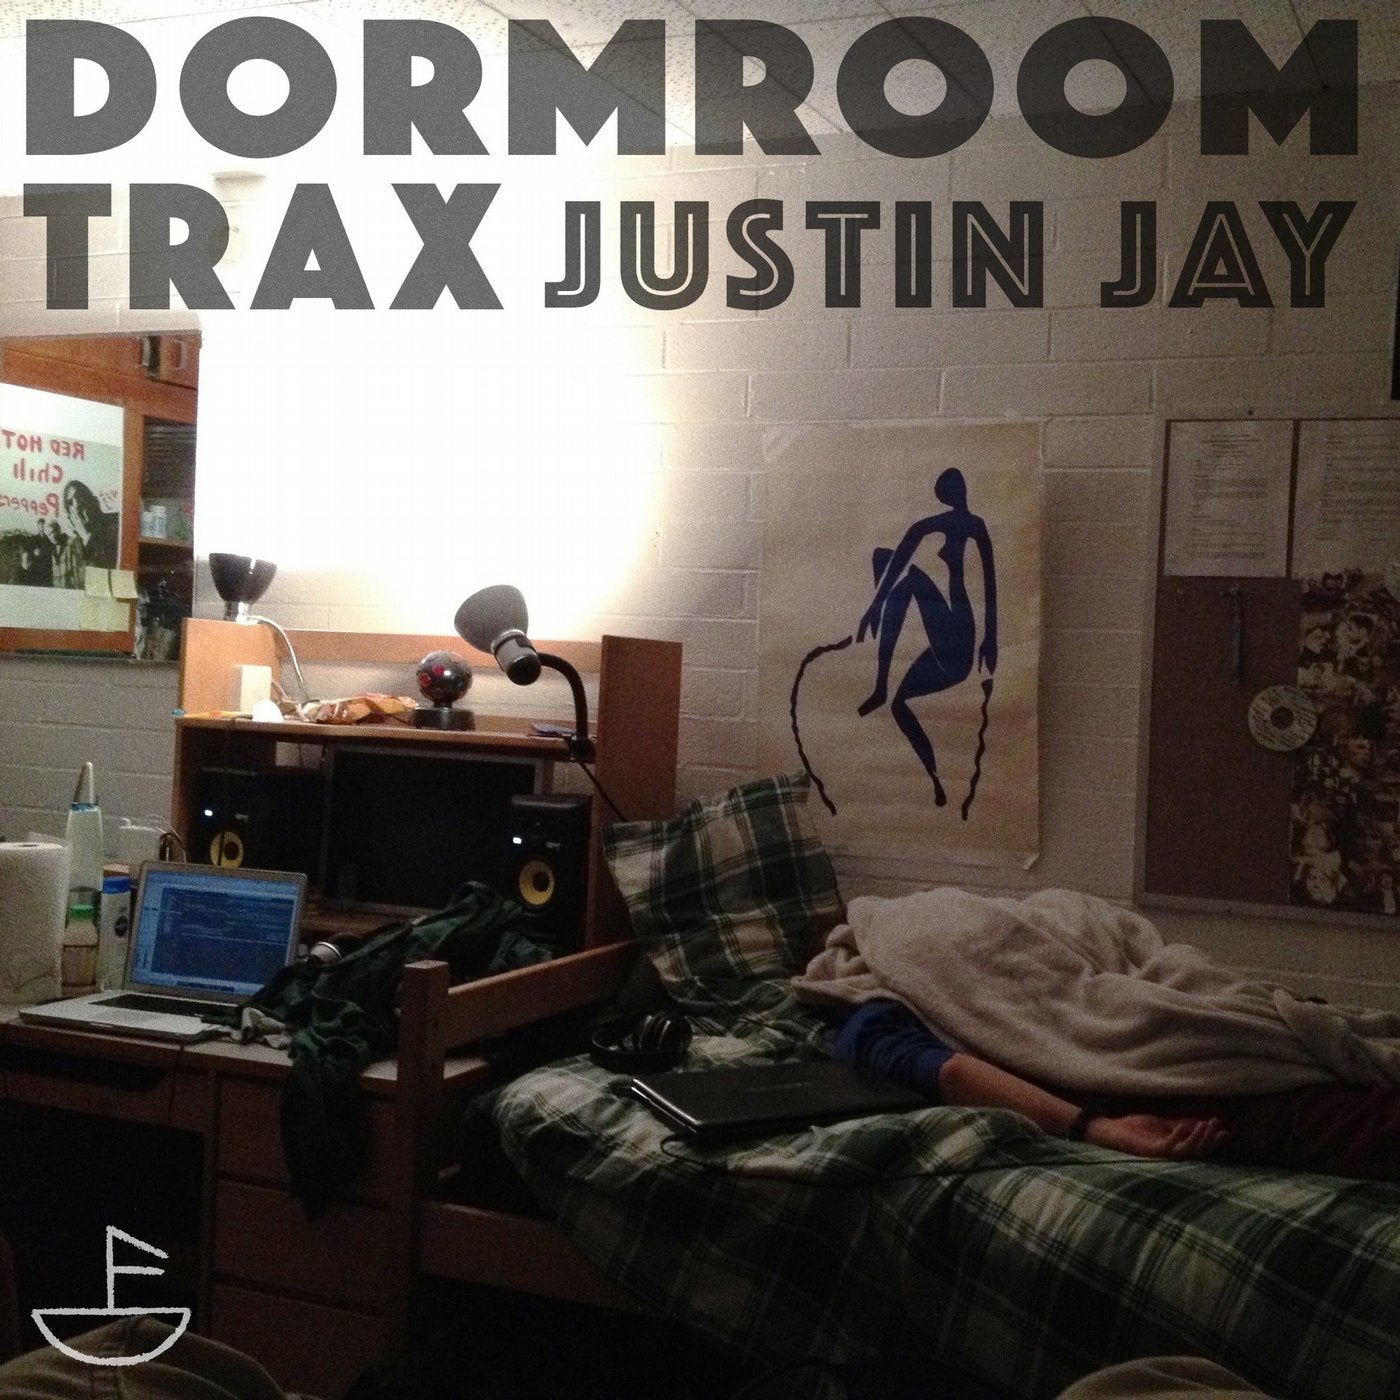 Dormroom Trax